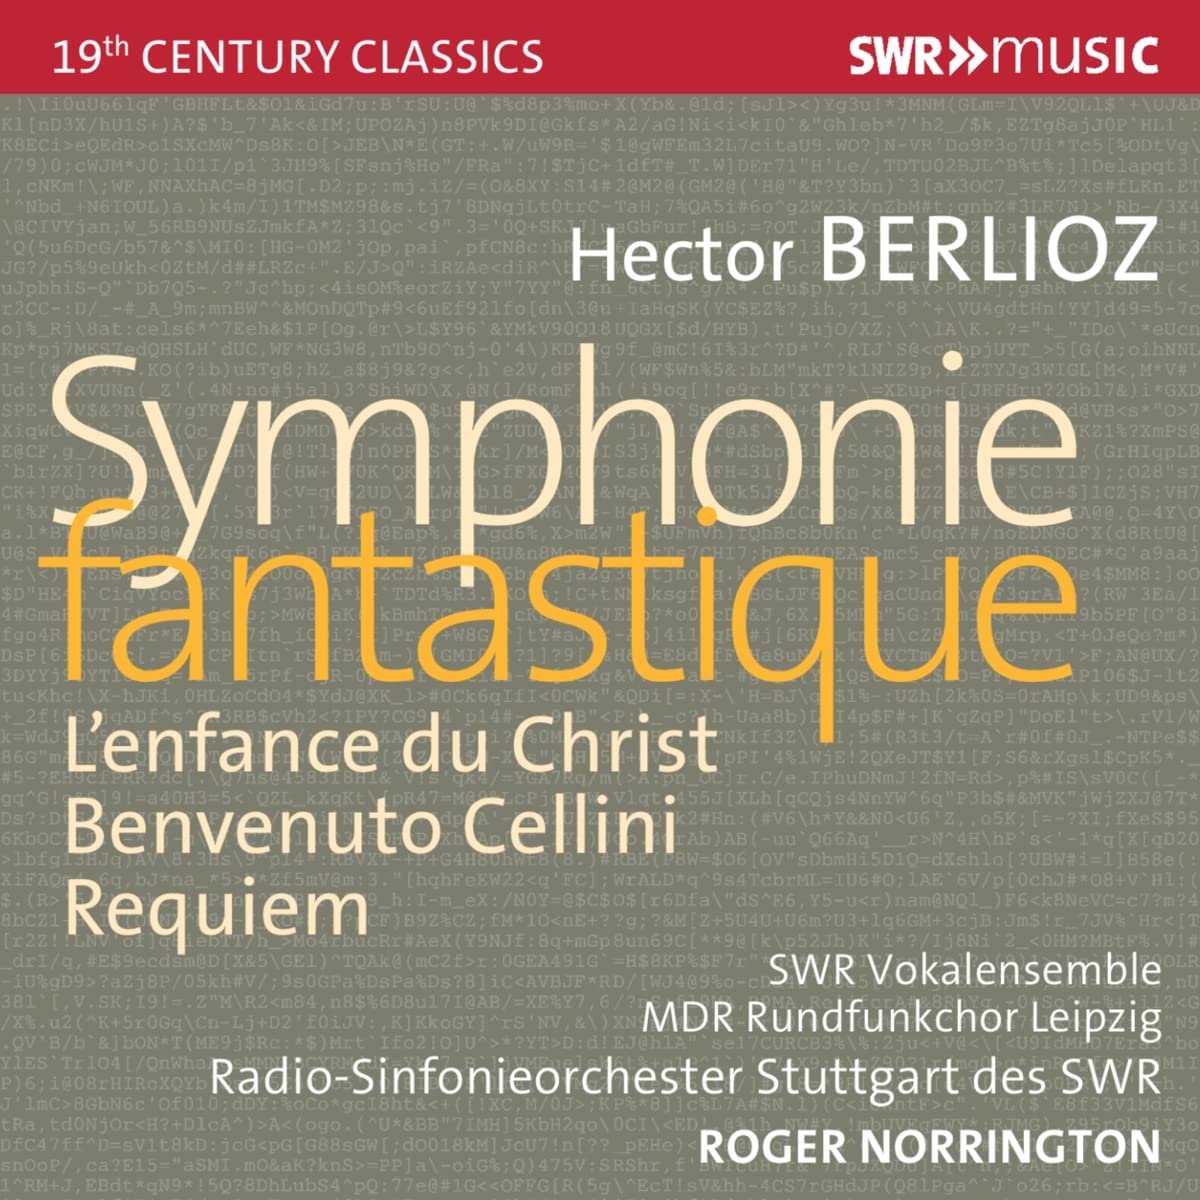 Audio Cd Hector Berlioz - ymphonie Fantastique, L'Enfance Du Christ, Benvenuto Cellini & Requiem (7 Cd) NUOVO SIGILLATO, EDIZIONE DEL 16/02/2022 SUBITO DISPONIBILE